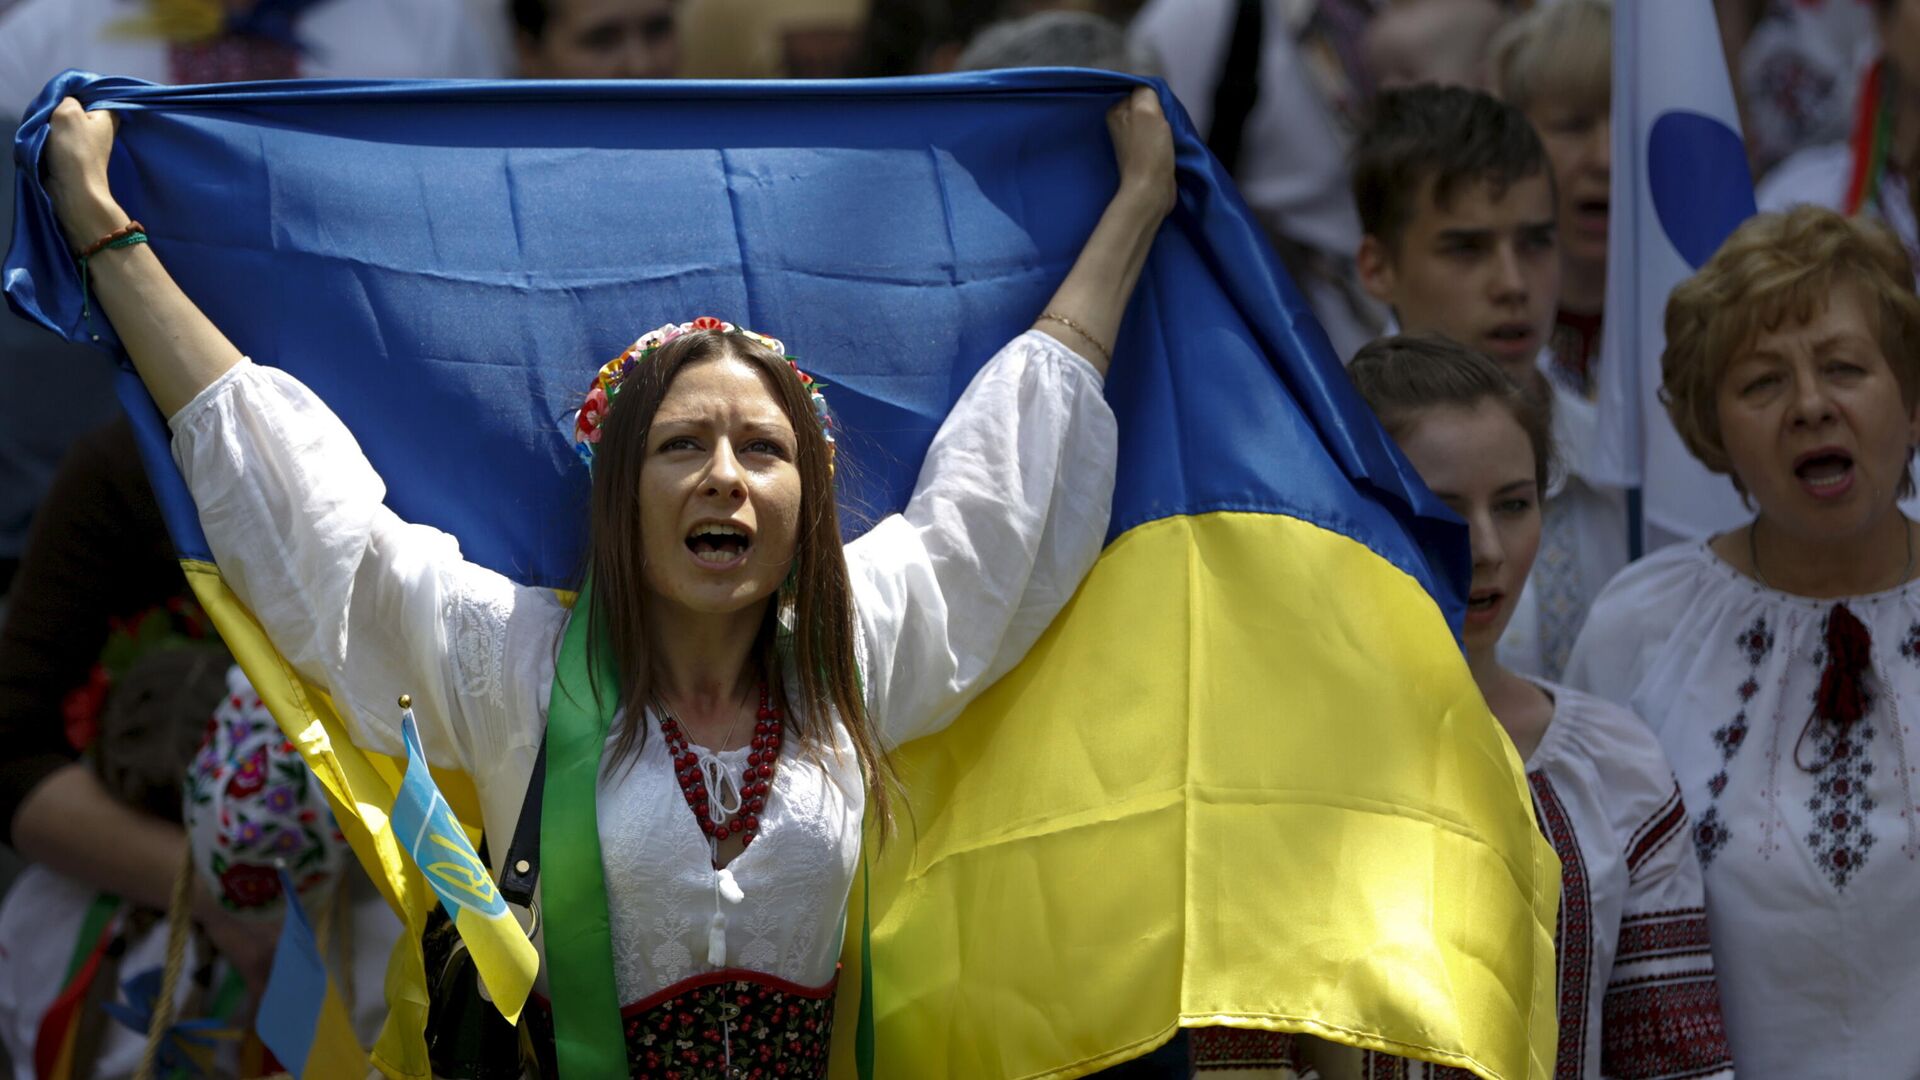 Женщина в вышиванке с украинским флагом на марше в Киеве, Украина - Sputnik Узбекистан, 1920, 23.08.2021